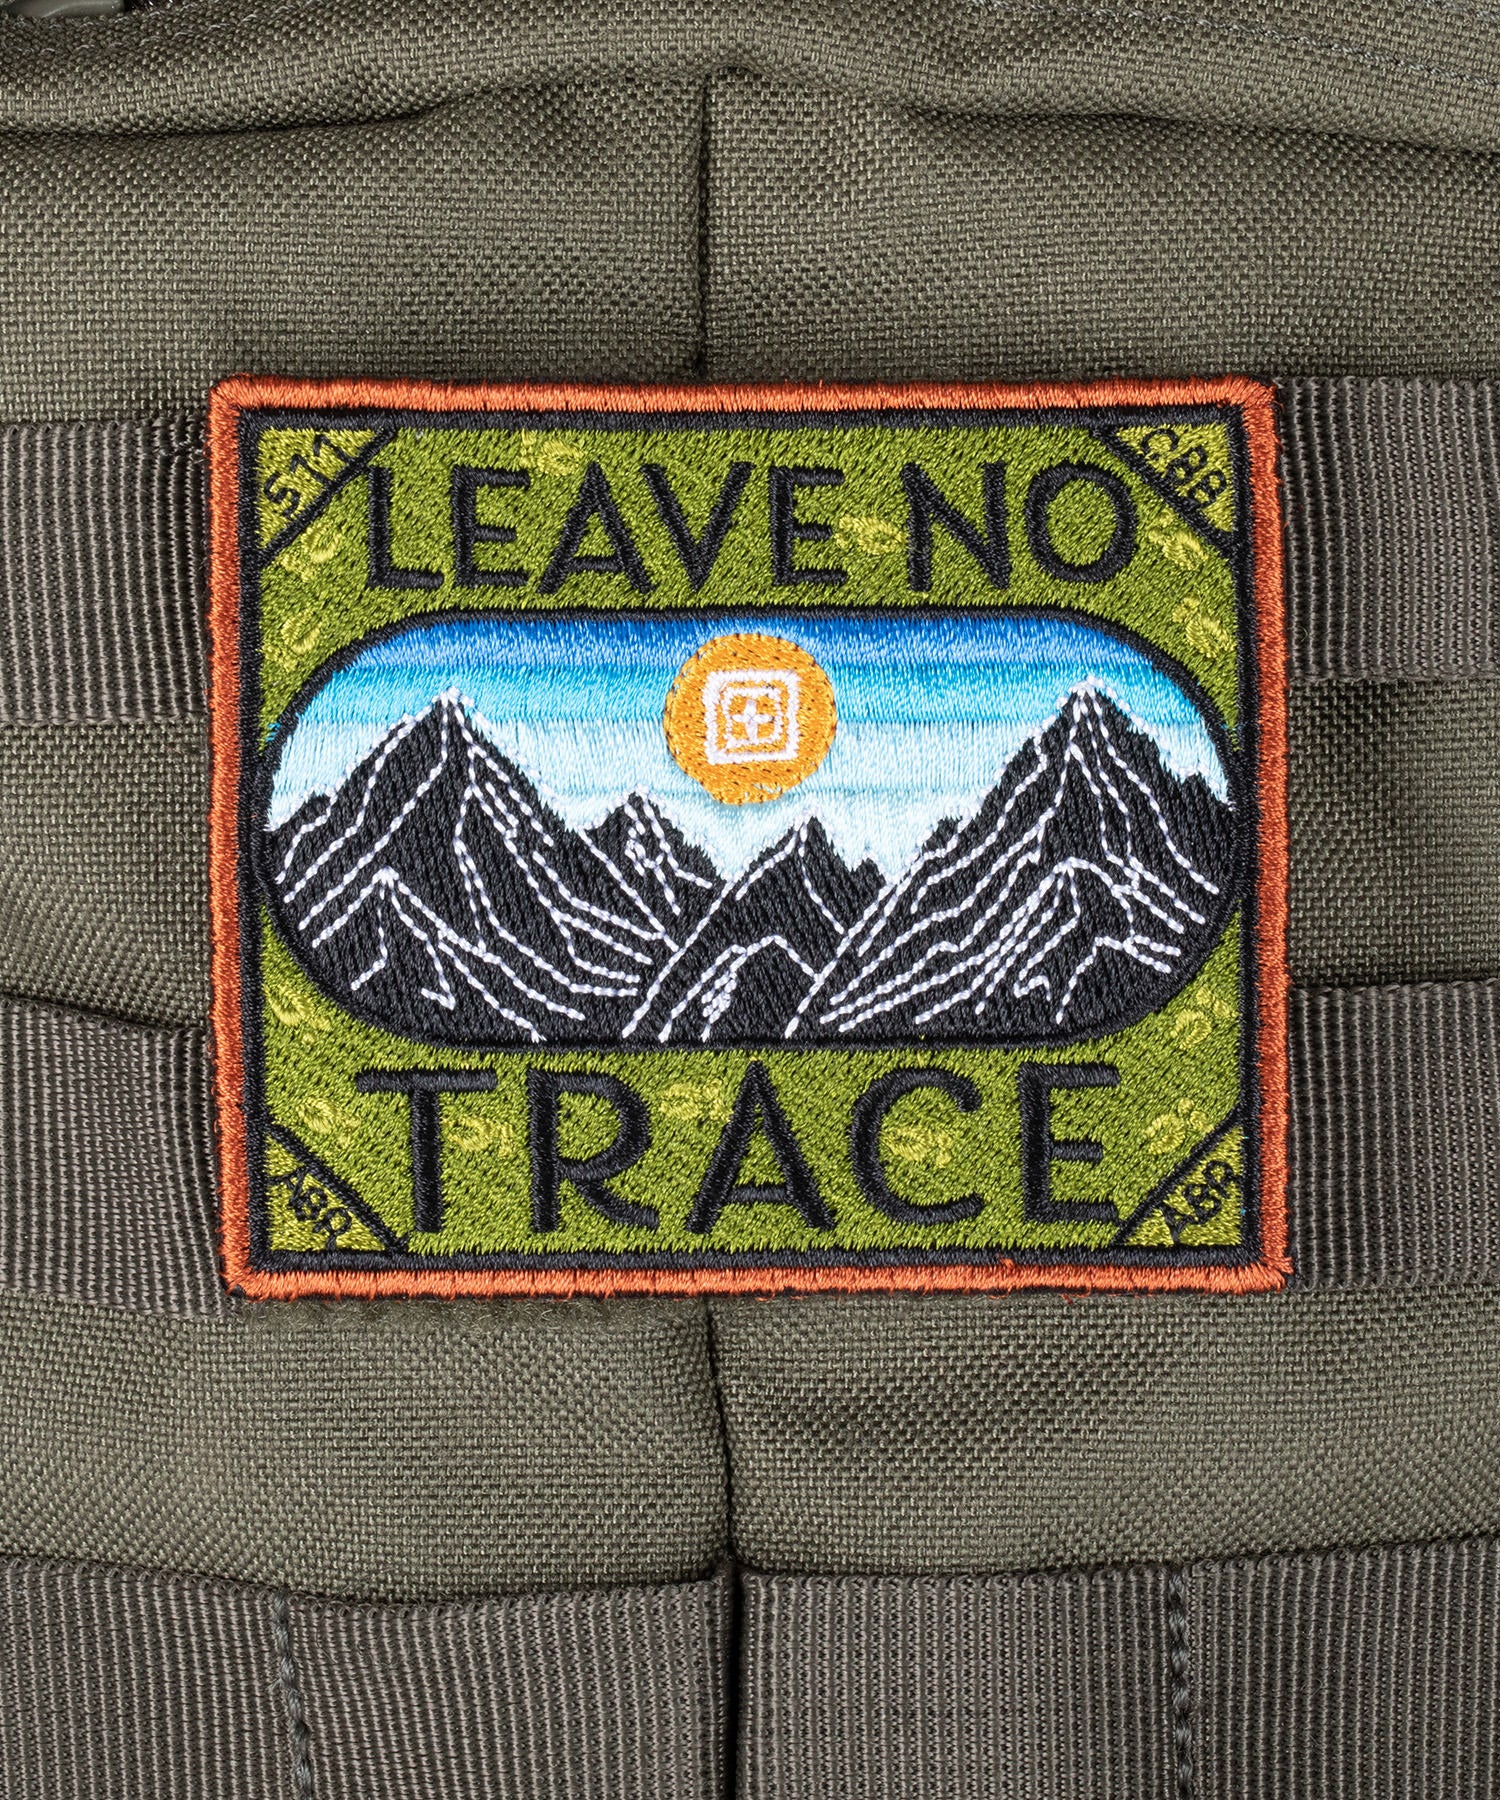 patche "leave no trace" applicata ad uno zaino 5.11 durante una passeggiata